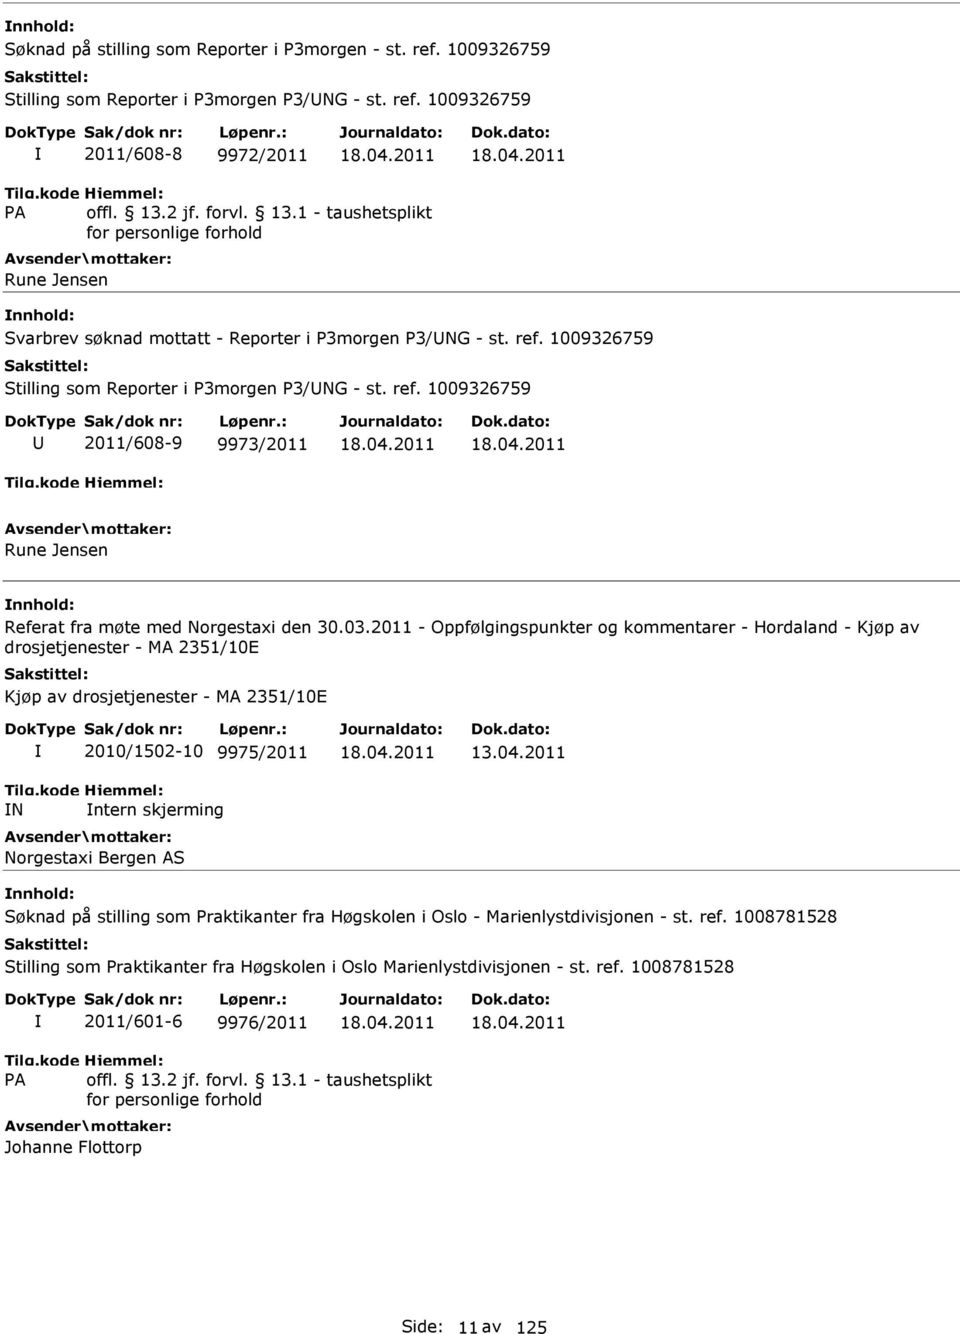 2011 - Oppfølgingspunkter og kommentarer - Hordaland - Kjøp av drosjetjenester - MA 2351/10E Kjøp av drosjetjenester - MA 2351/10E N 2010/1502-10 9975/2011 ntern skjerming Norgestaxi Bergen AS 13.04.